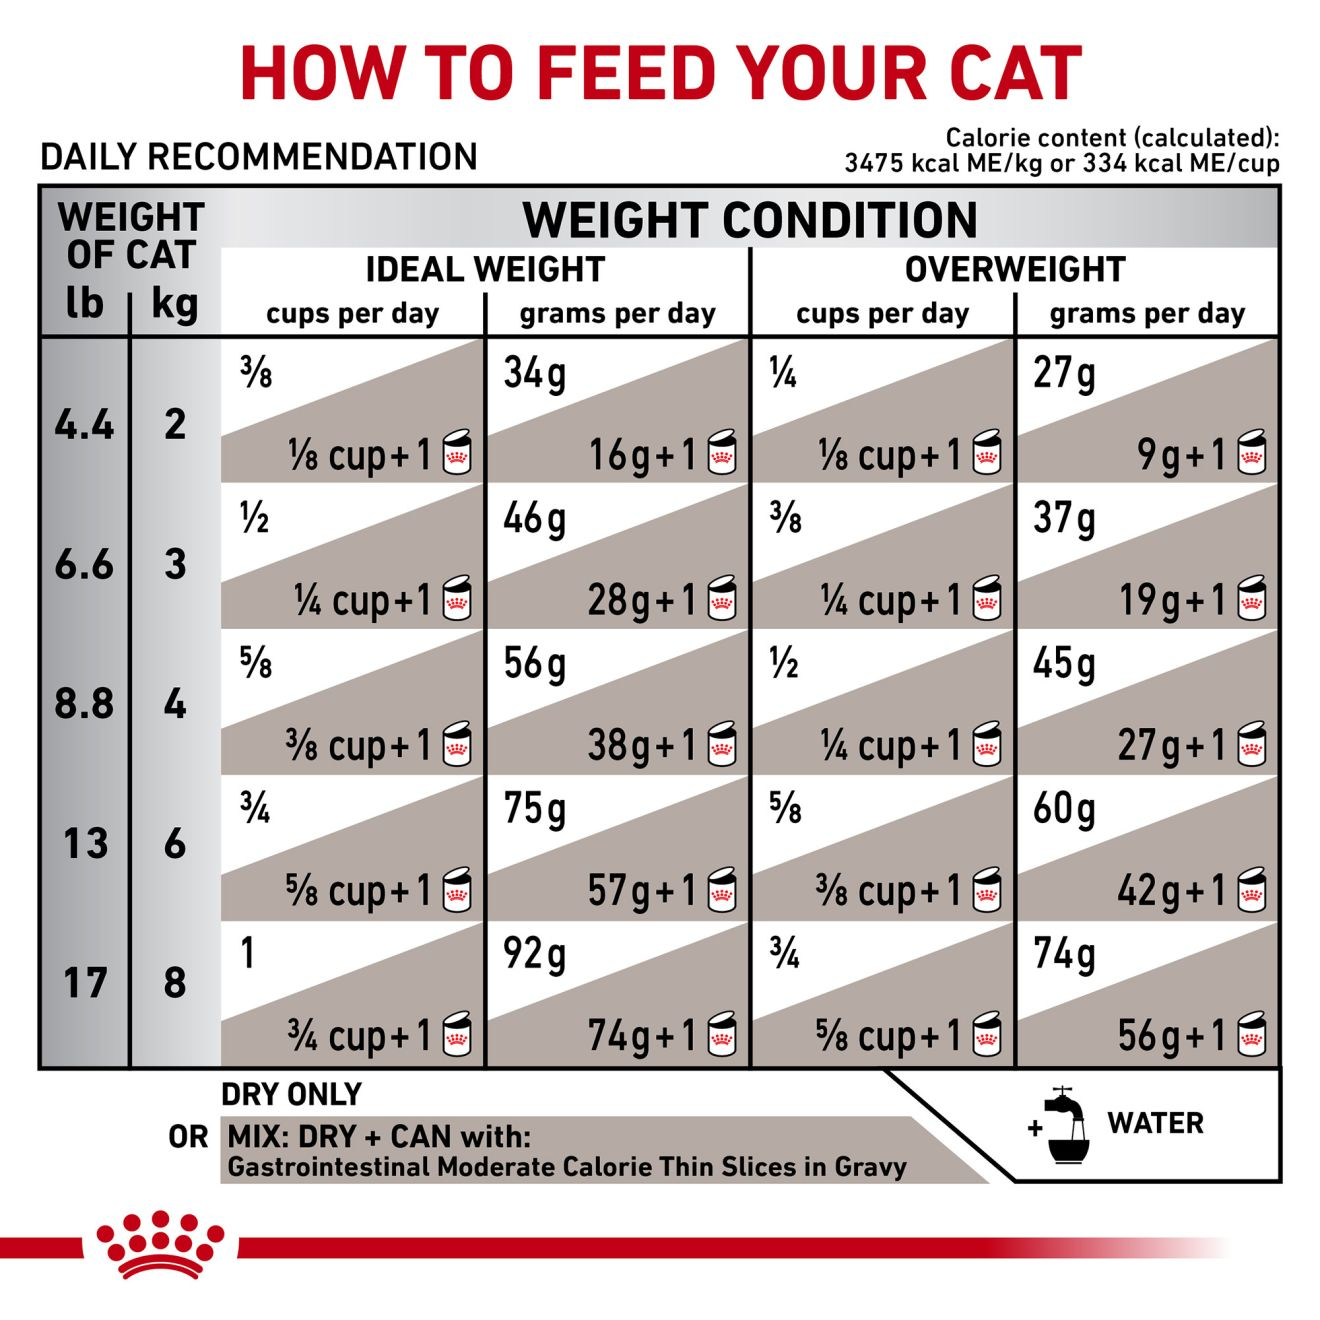 Feline Gastrointestinal Moderate Calorie